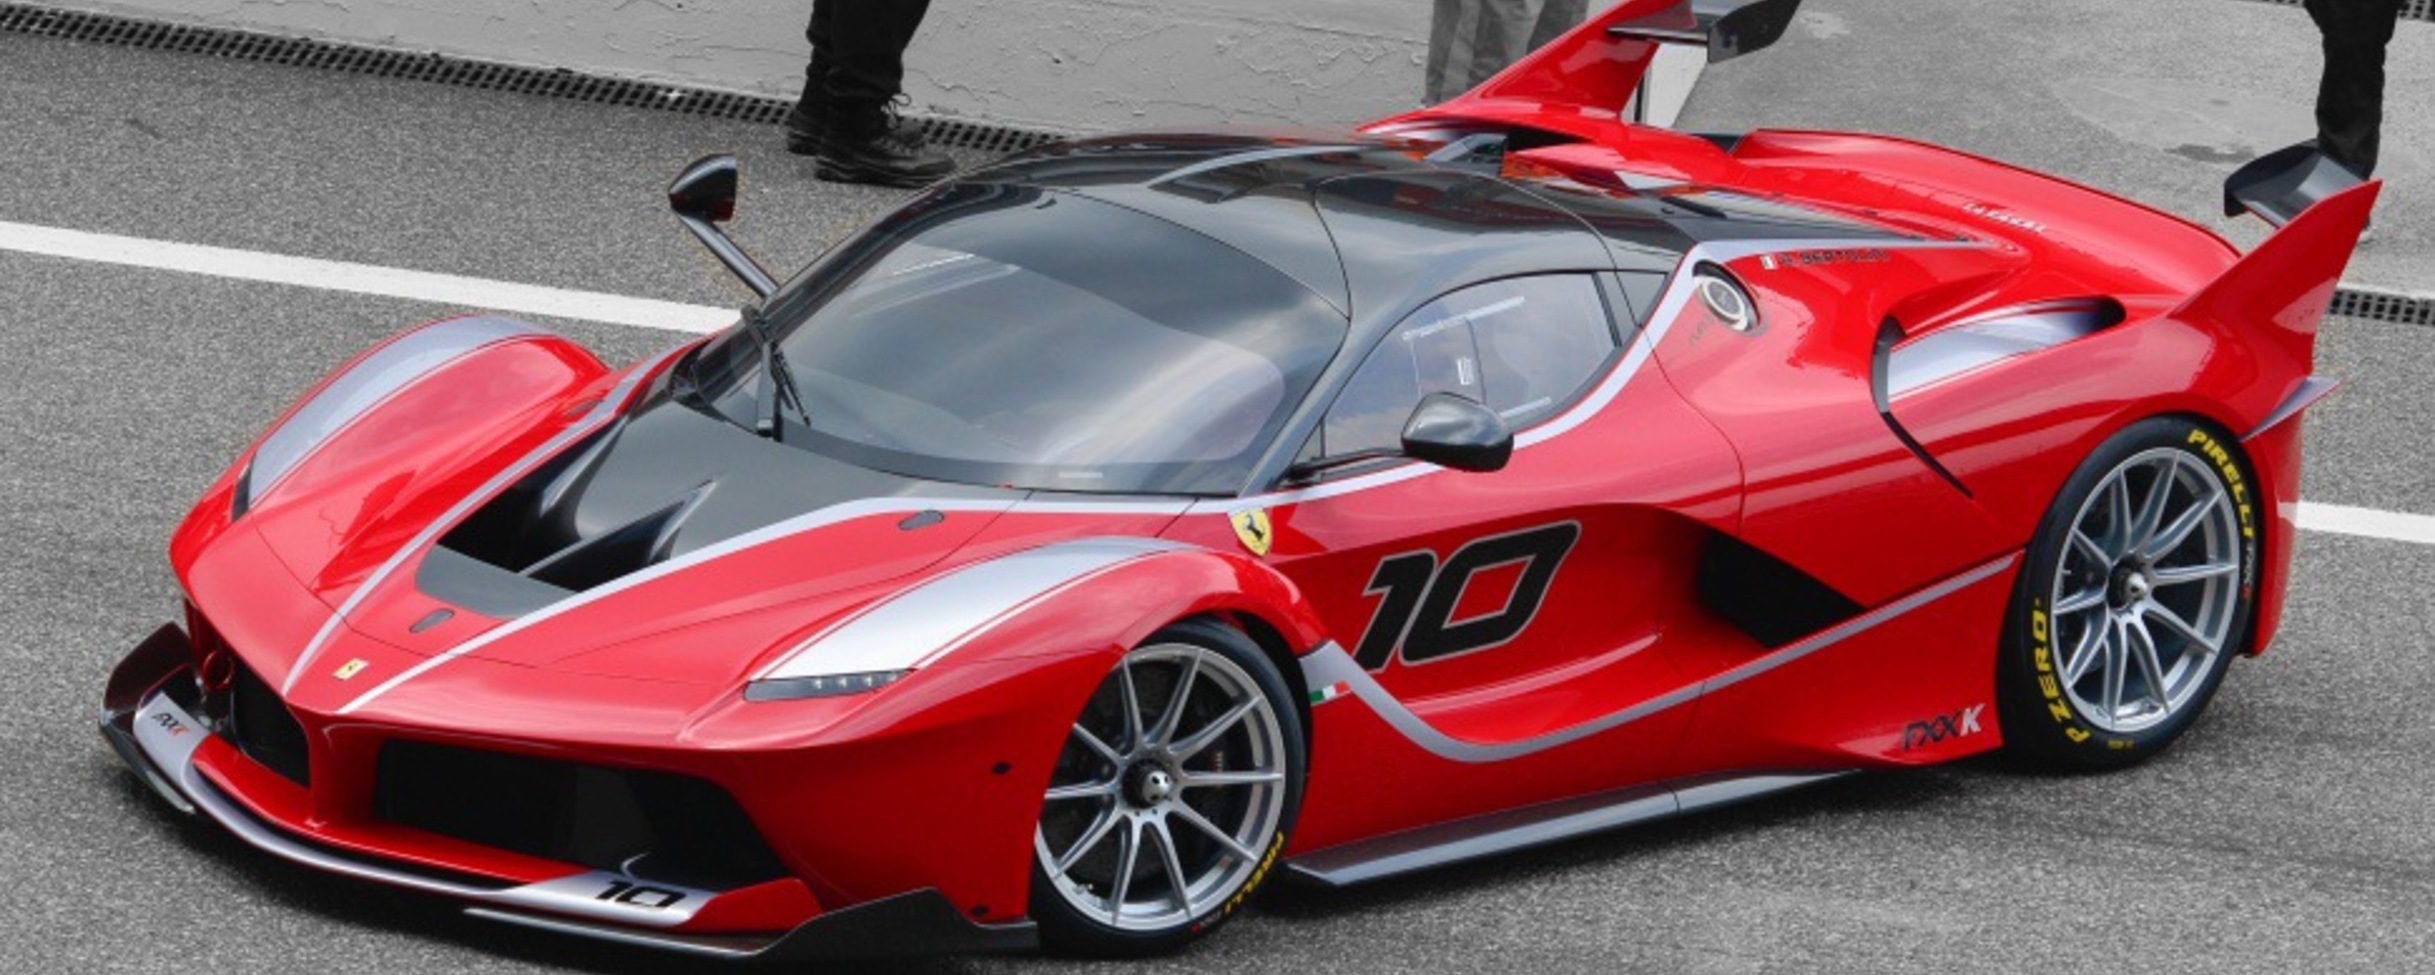 Ferrari FXX-K 6.3 V12 (1050 Hp) Hybrid DCT 2014, 2015, 2016, 2017 